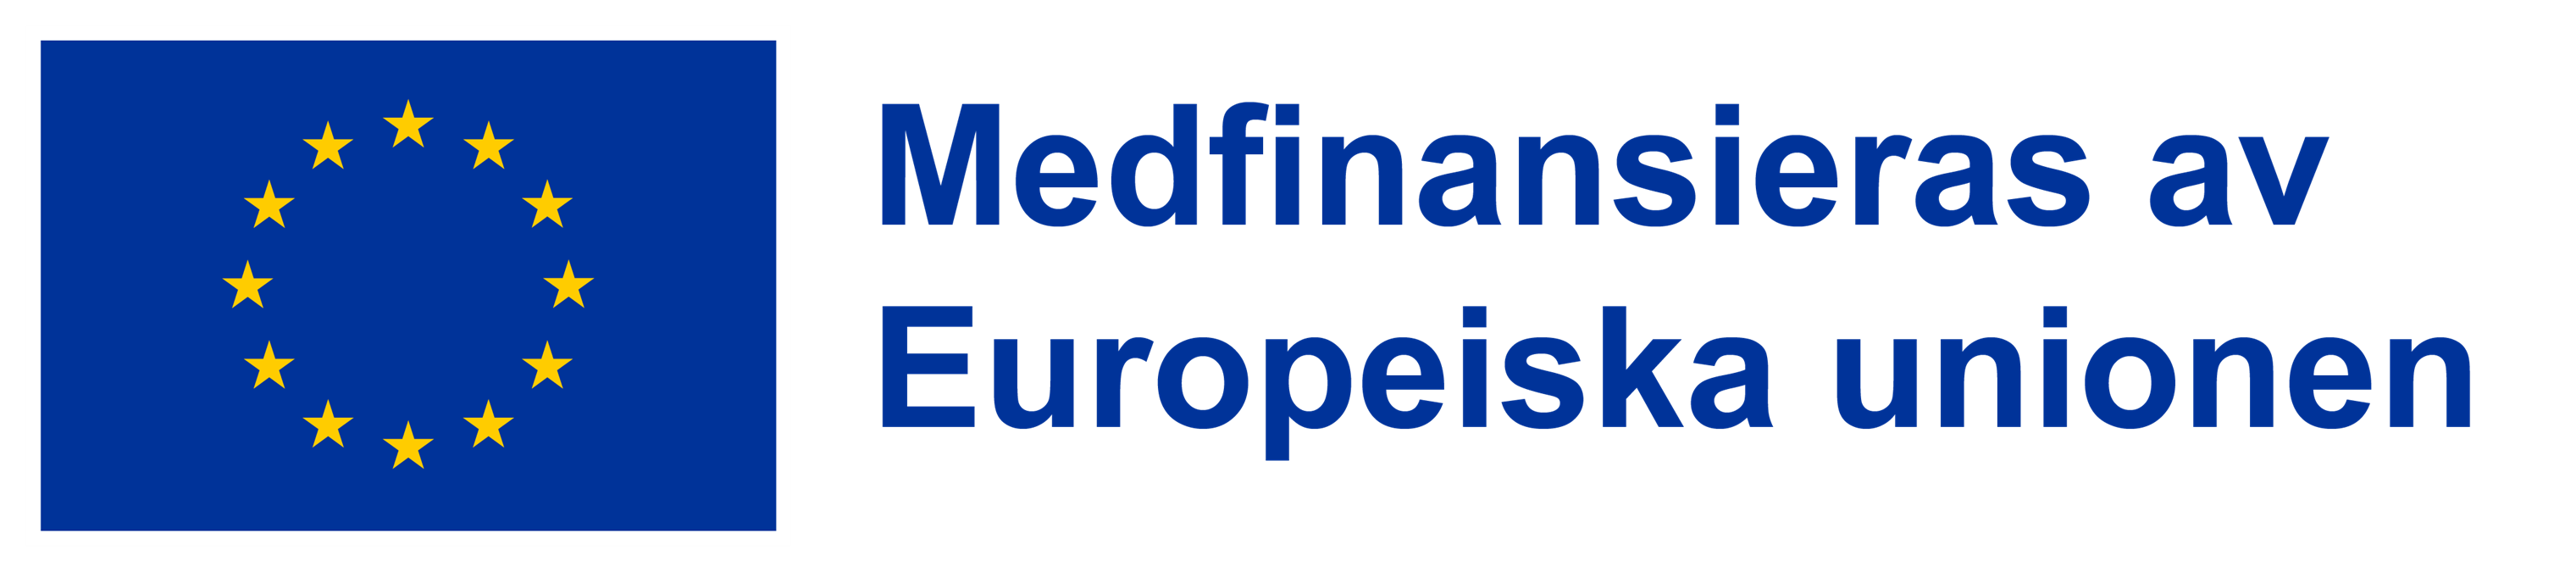 EU logga medfinansiering